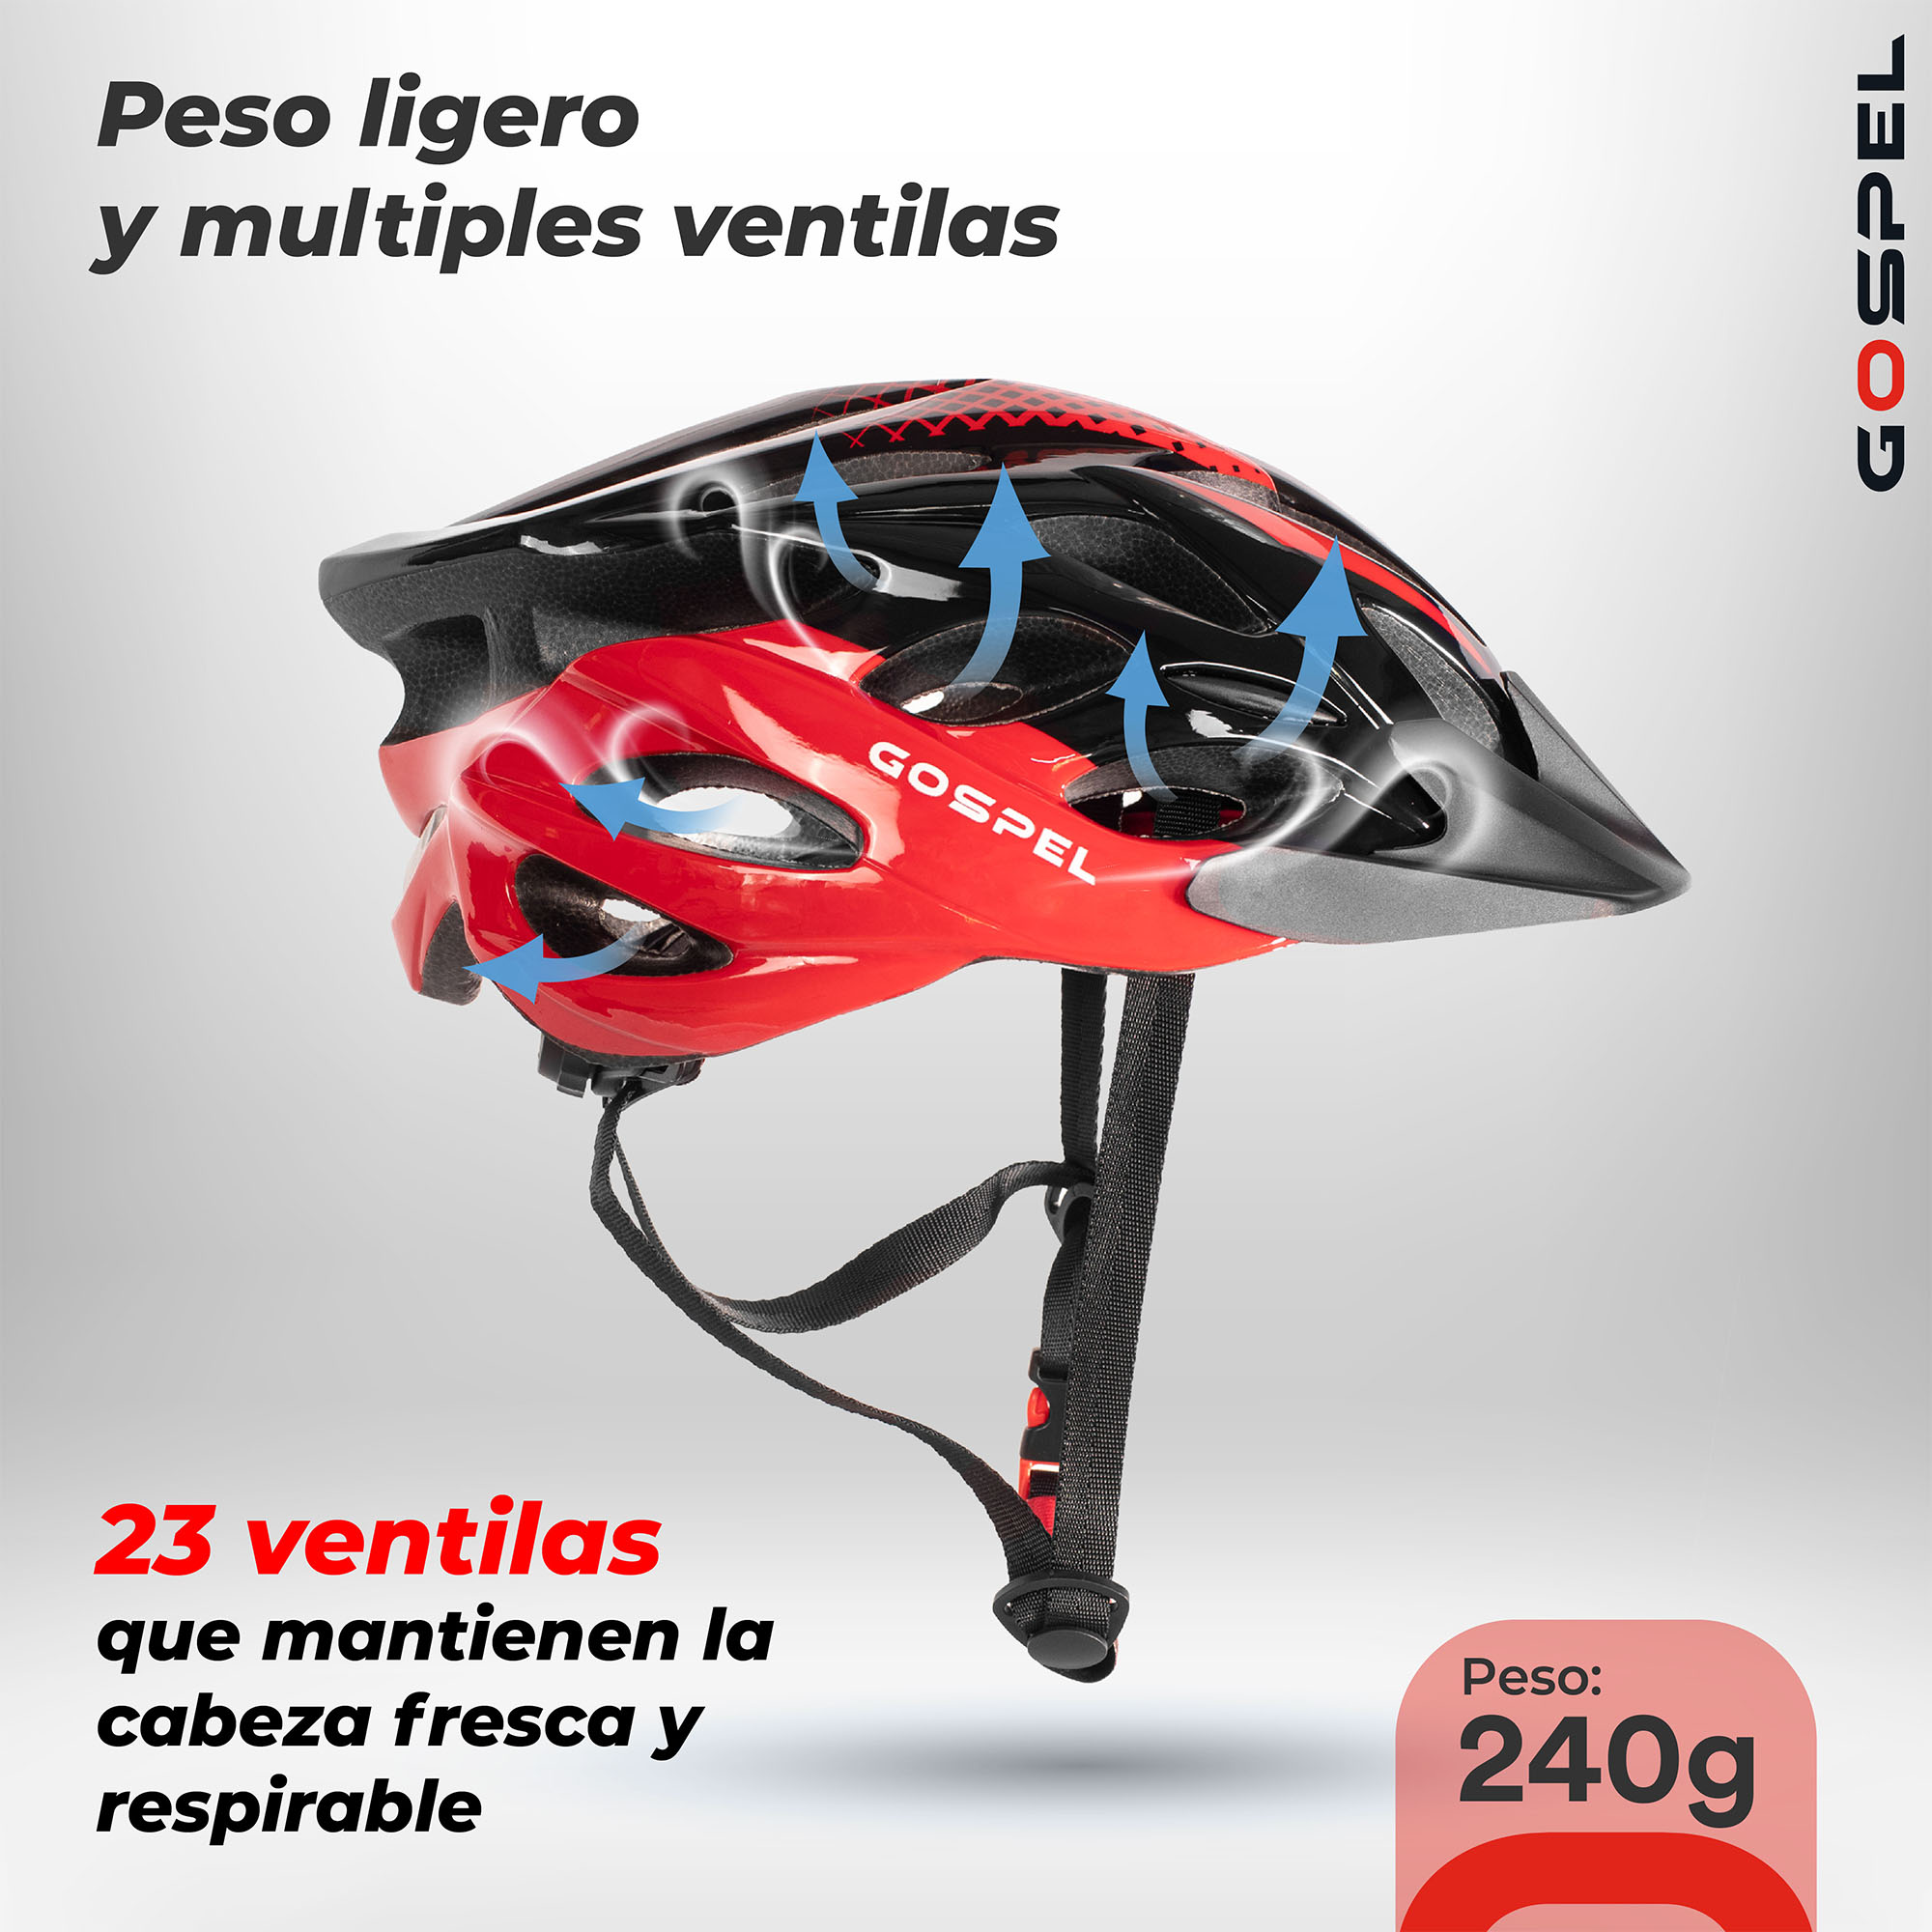 Casco bici carretera marca Giro modelo synthe color rojo o negro — OnVeló  Cycling